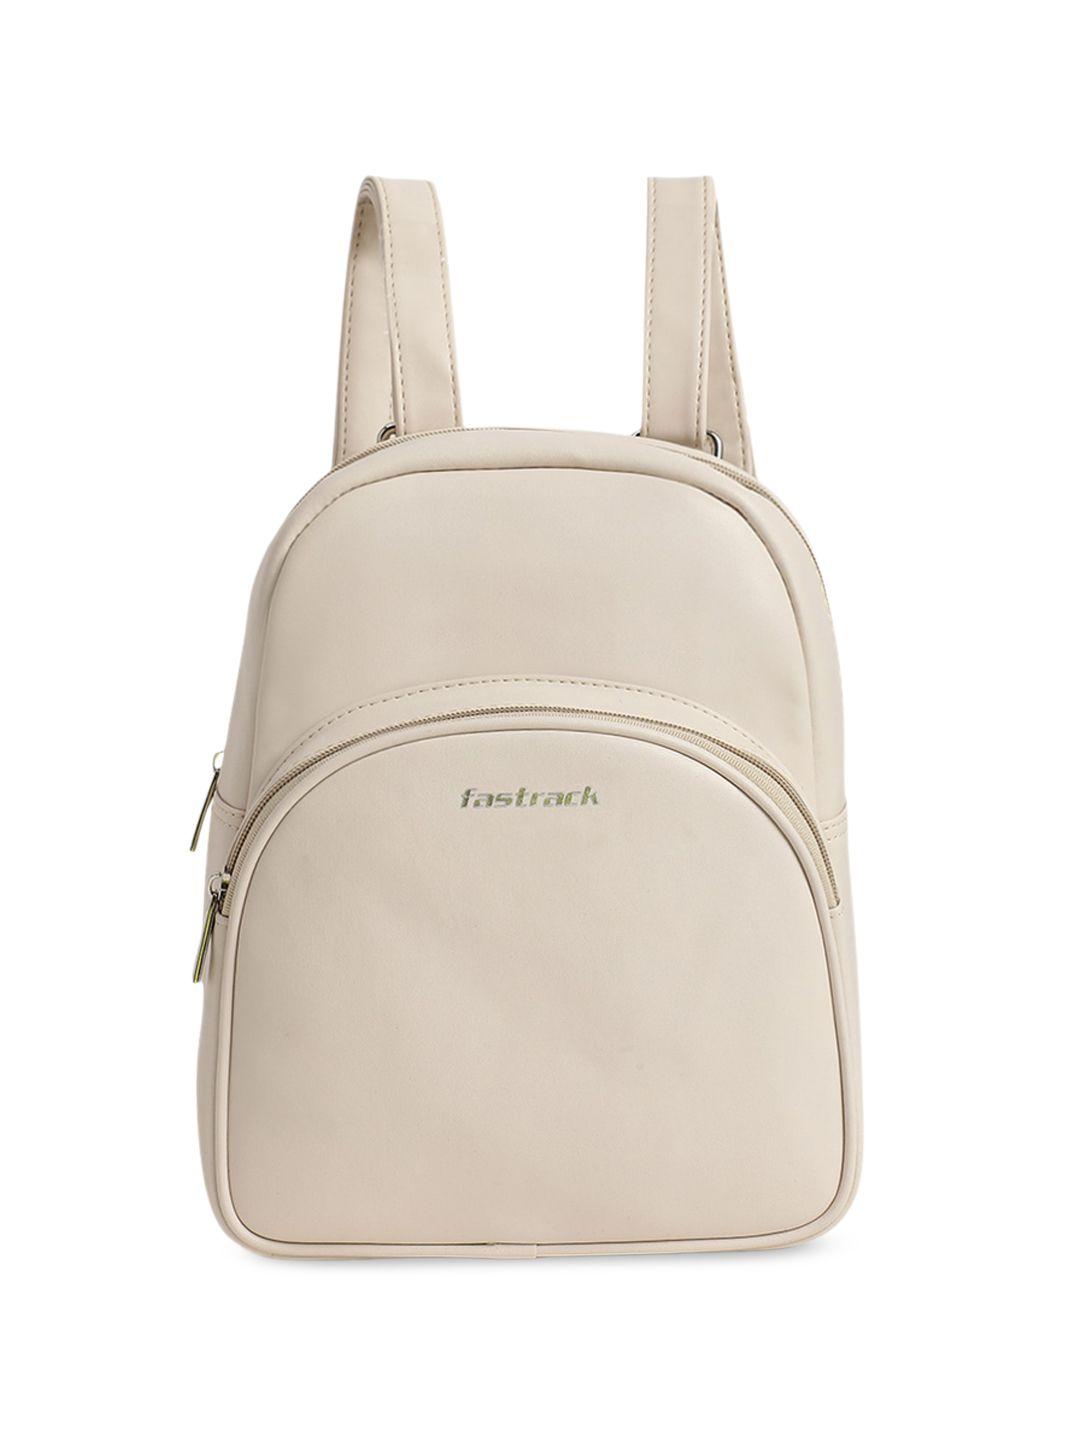 fastrack structured backpack bag